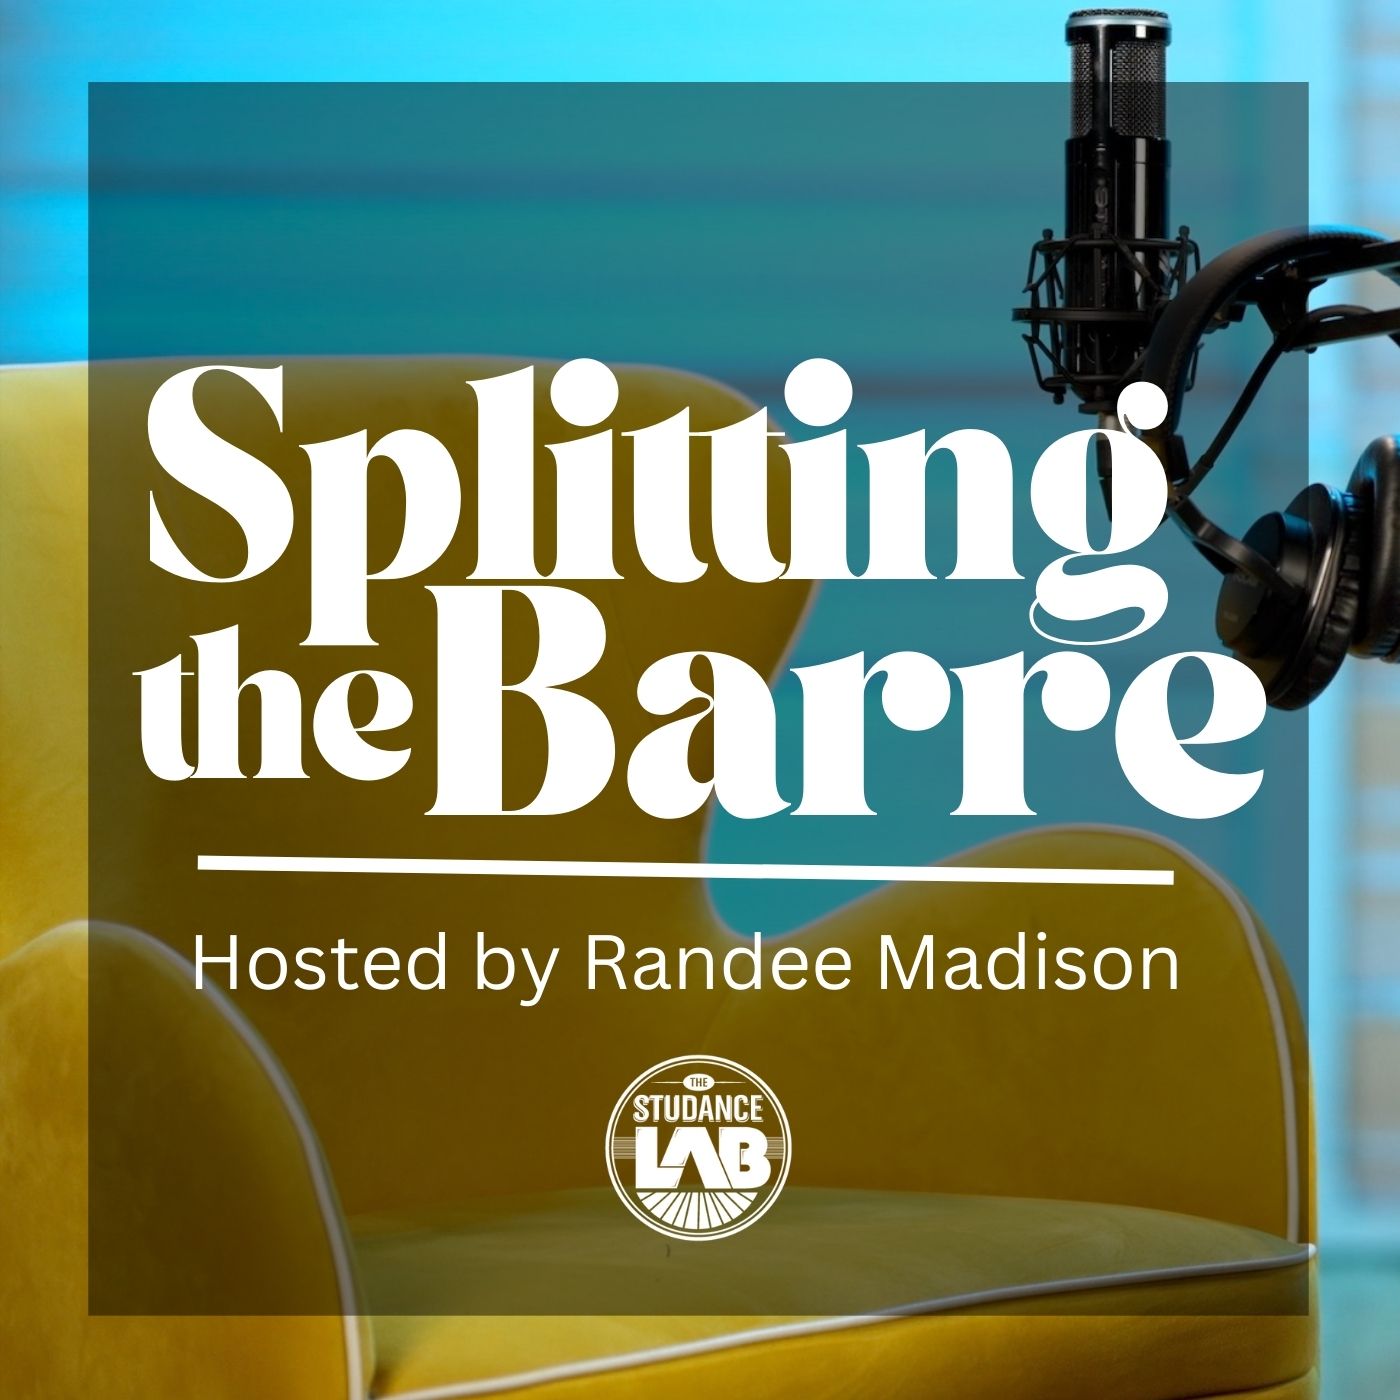 Artwork for podcast Splitting The Barre